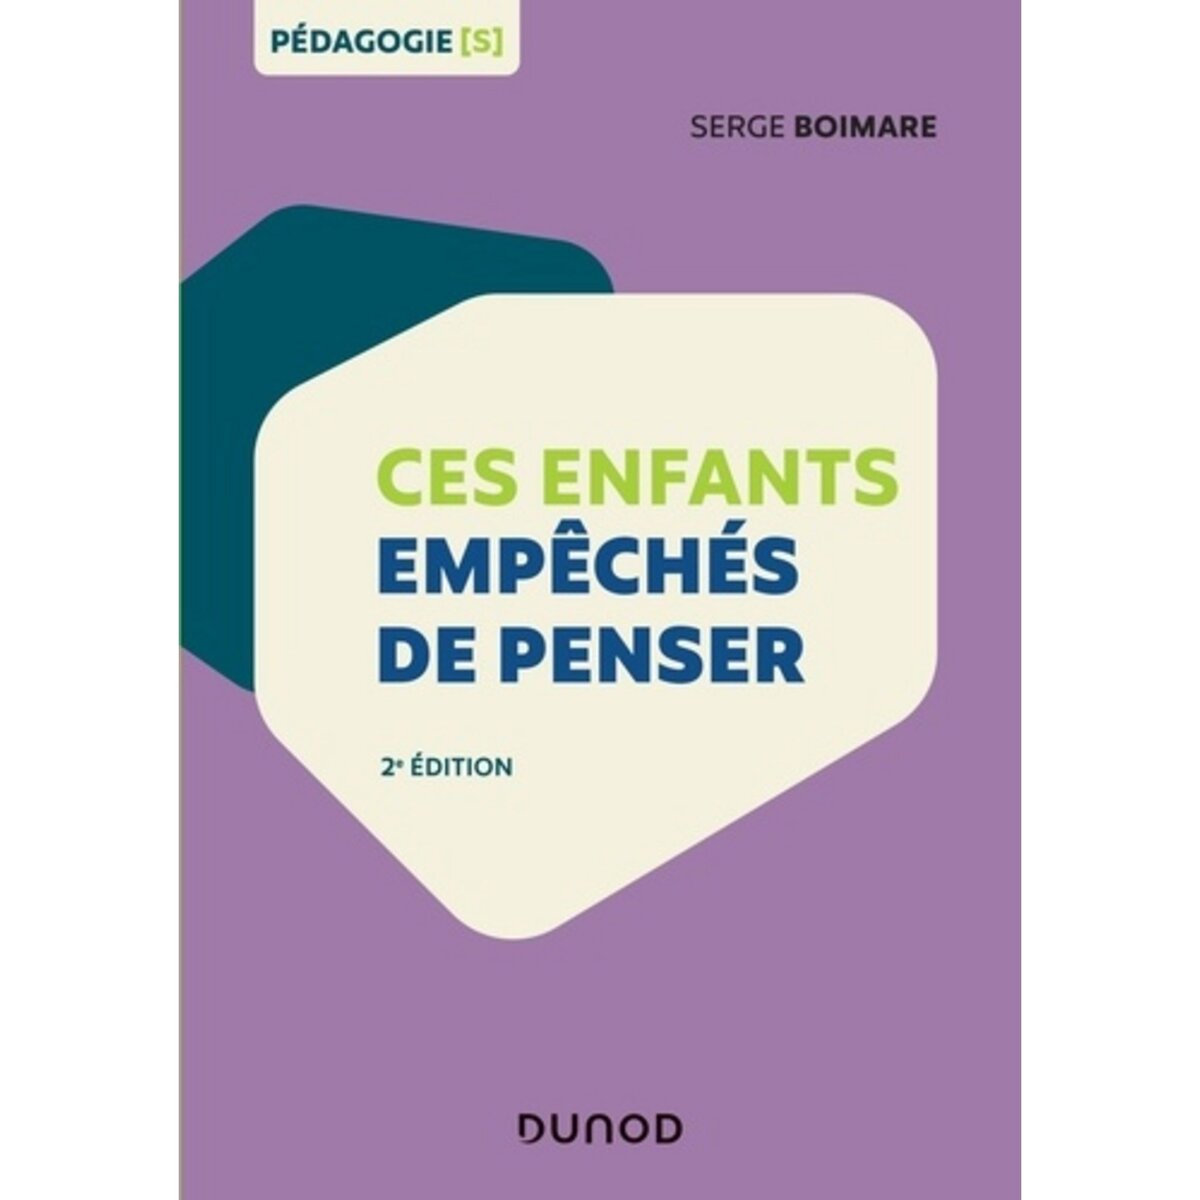  CES ENFANTS EMPECHES DE PENSER. 2E EDITION, Boimare Serge